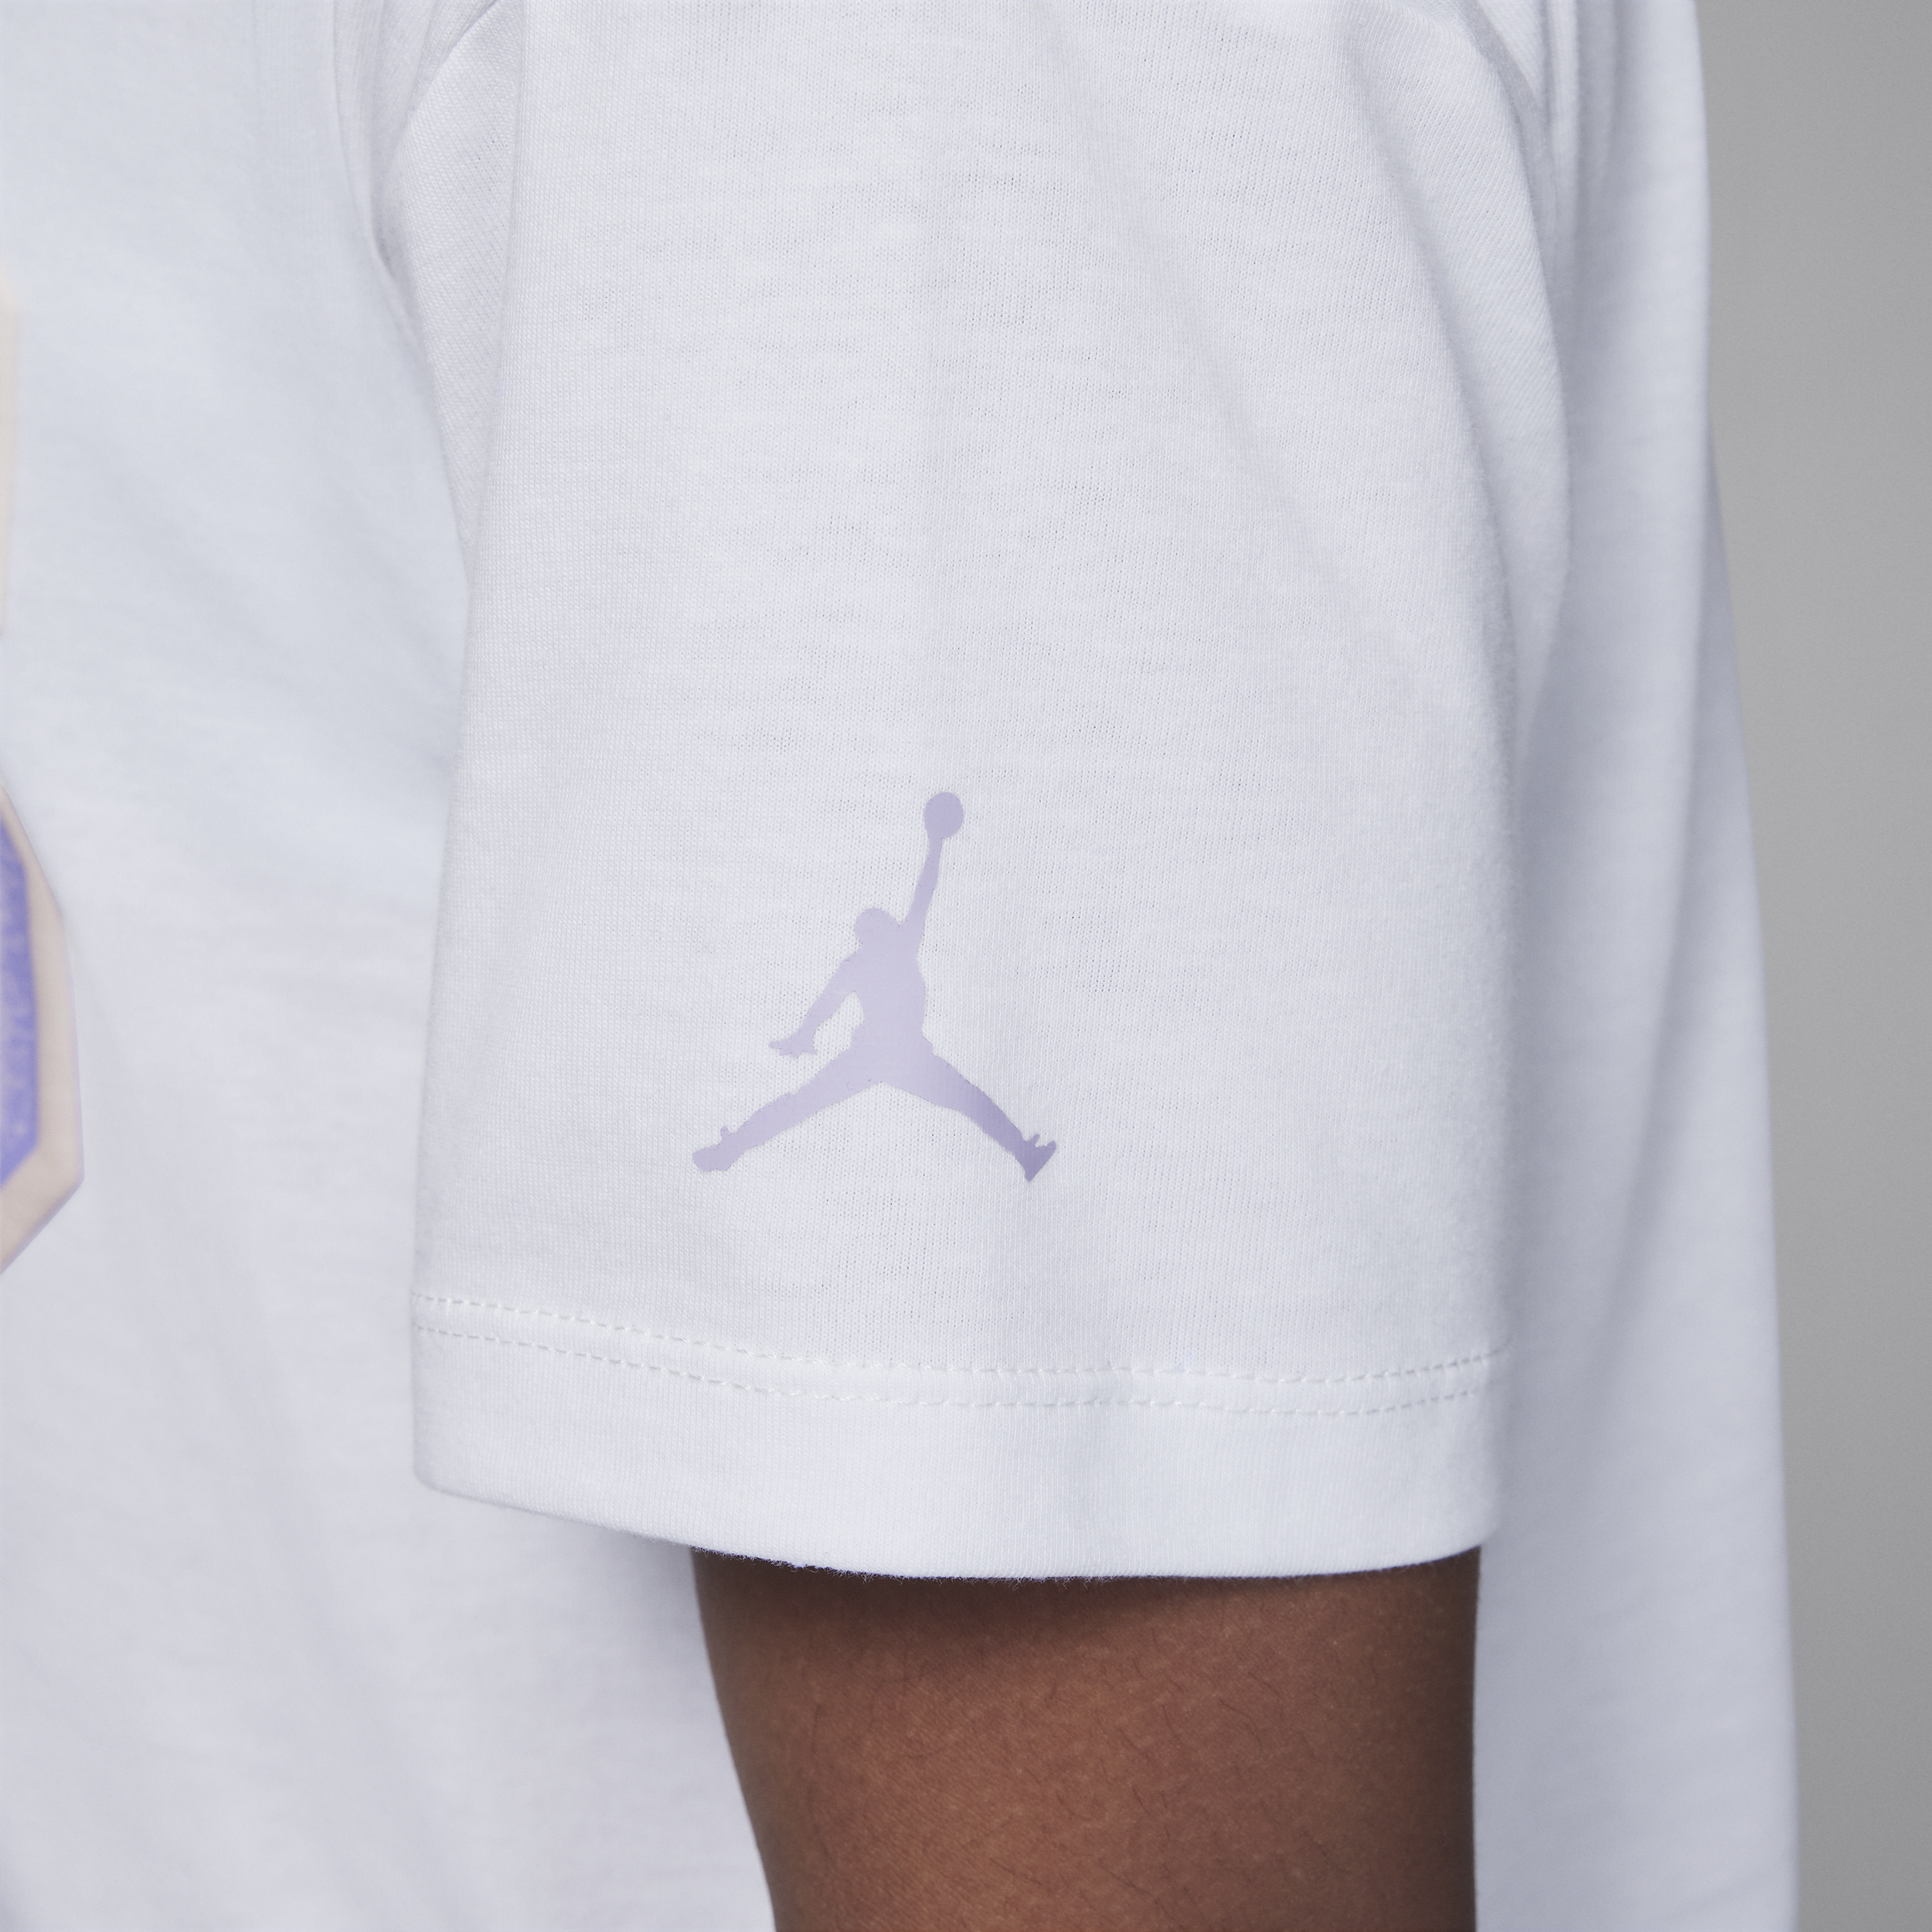 Jordan 23 Flight T-shirt met graphic voor kids Wit